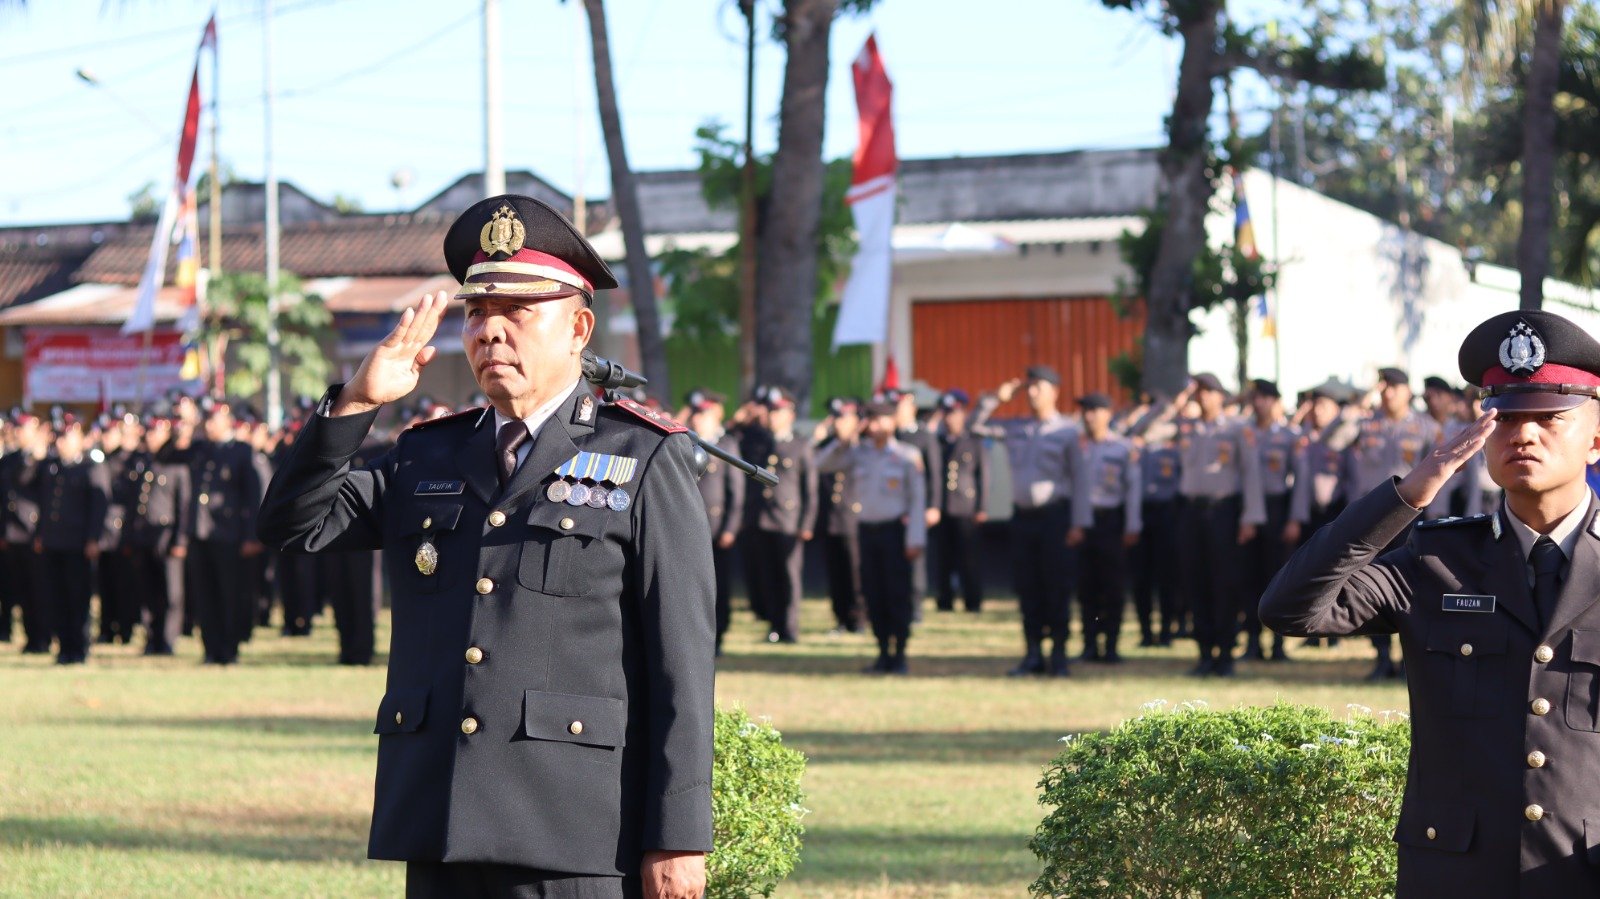 Upacara Bendera HUT RI ke-78 di Polres Lombok Barat